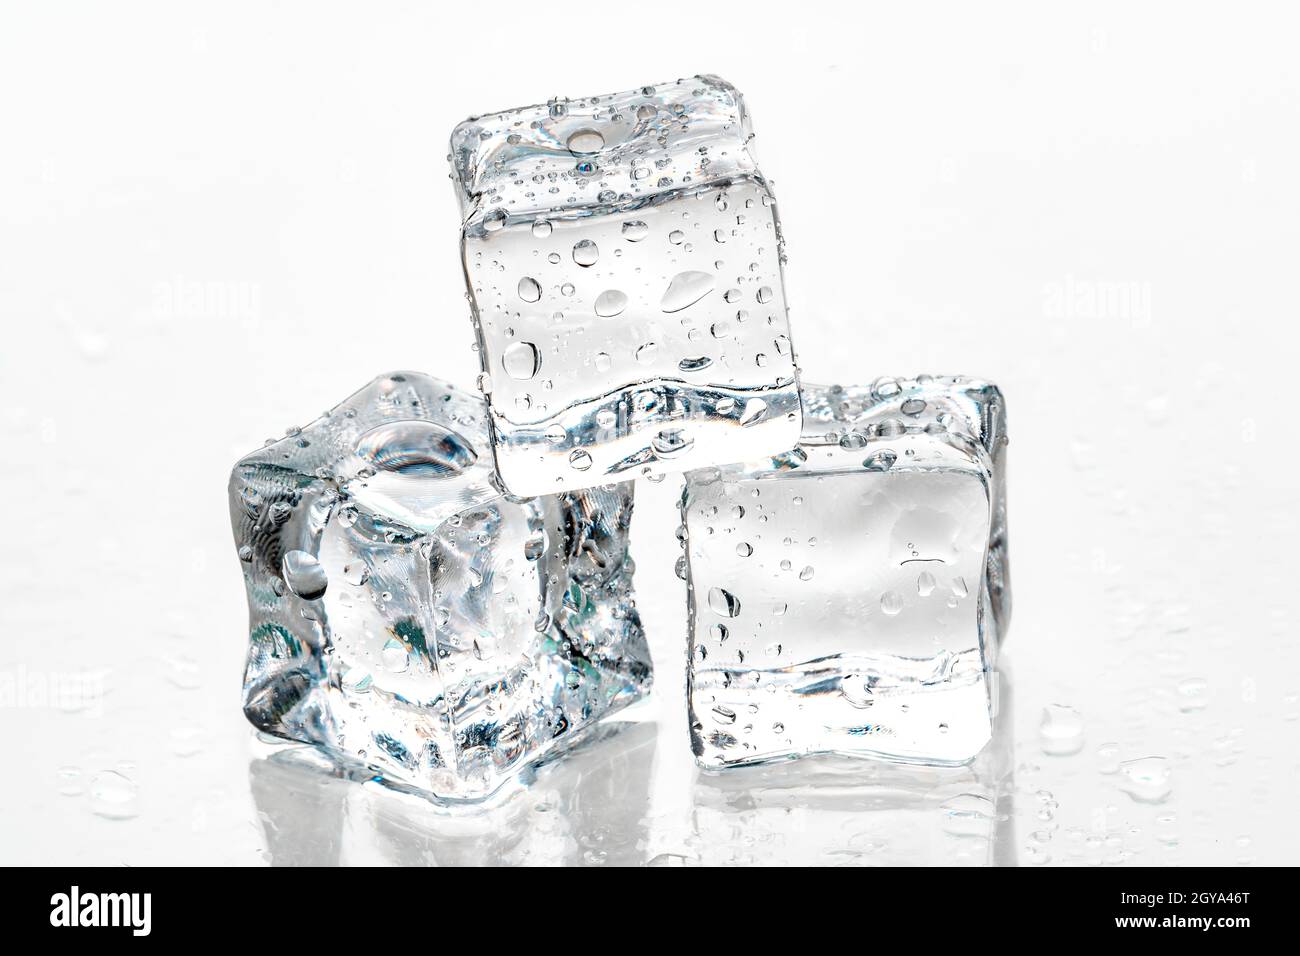 ice cubes on white background. Stock Photo